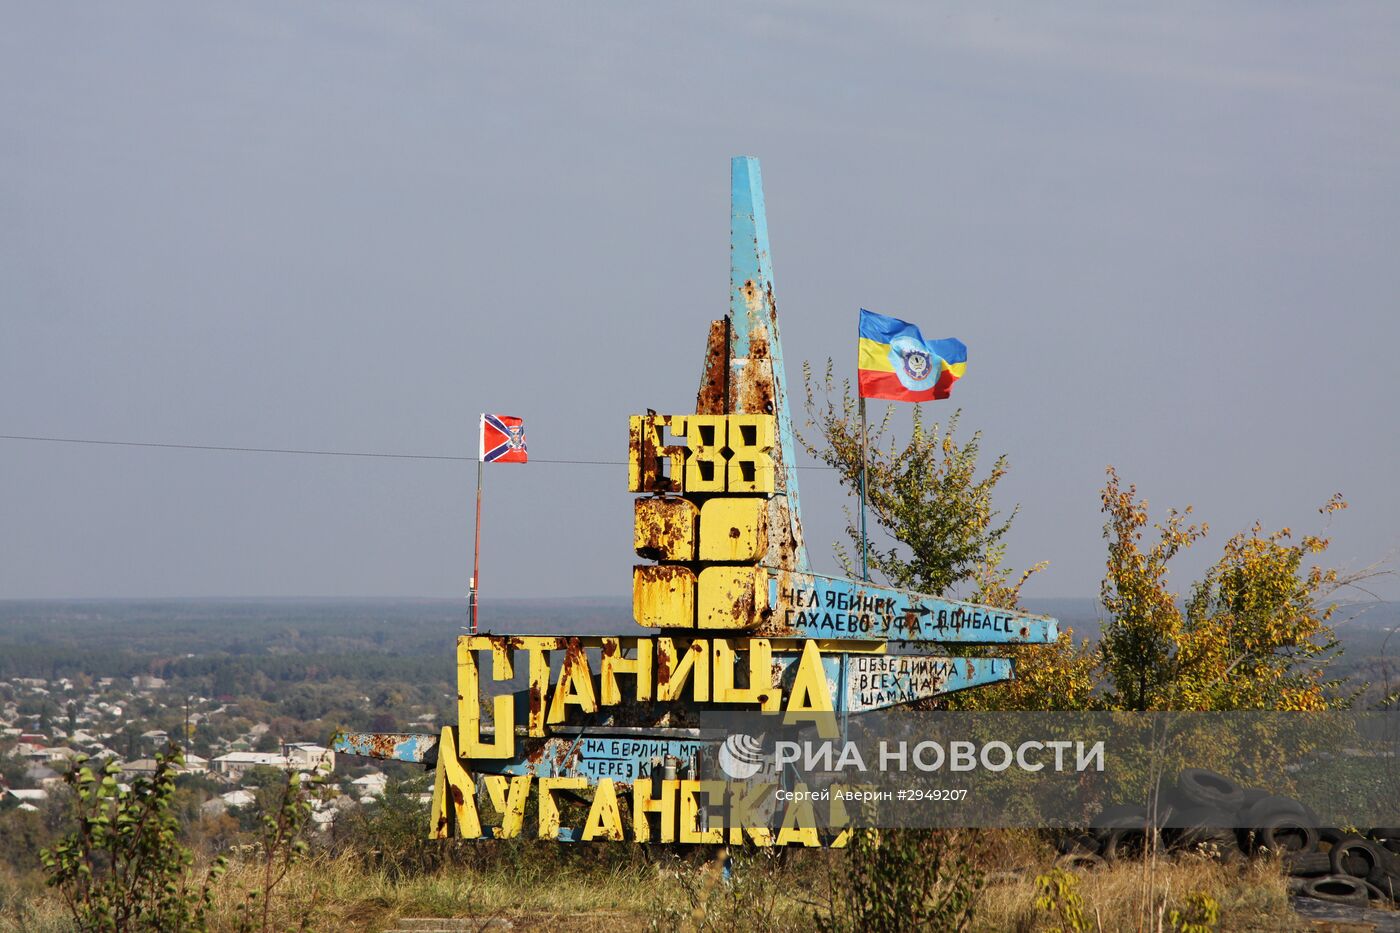 Ситуация в районе пропускного пункта "Станица Луганская" в Донбассе